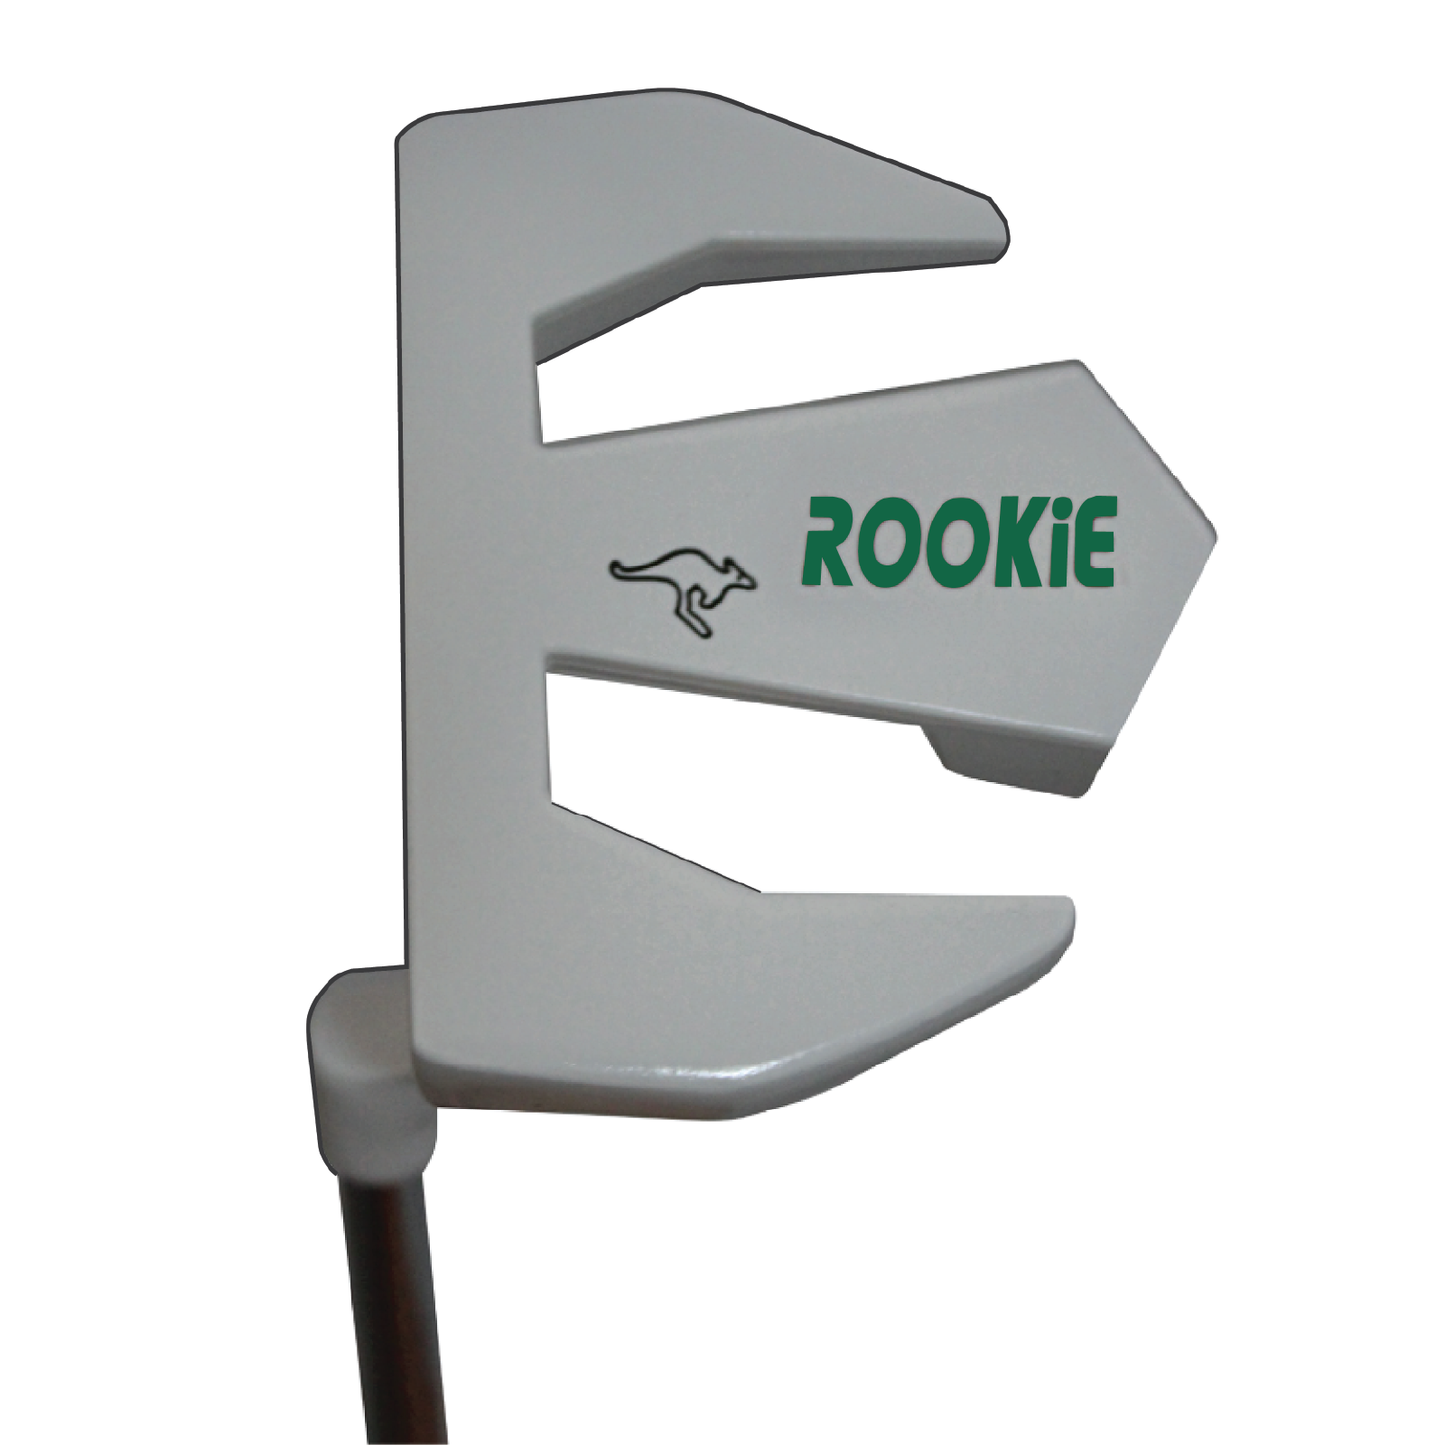 Rookie - Kids Golf Set RH - 6 Piece Green 7 to 10 YRS